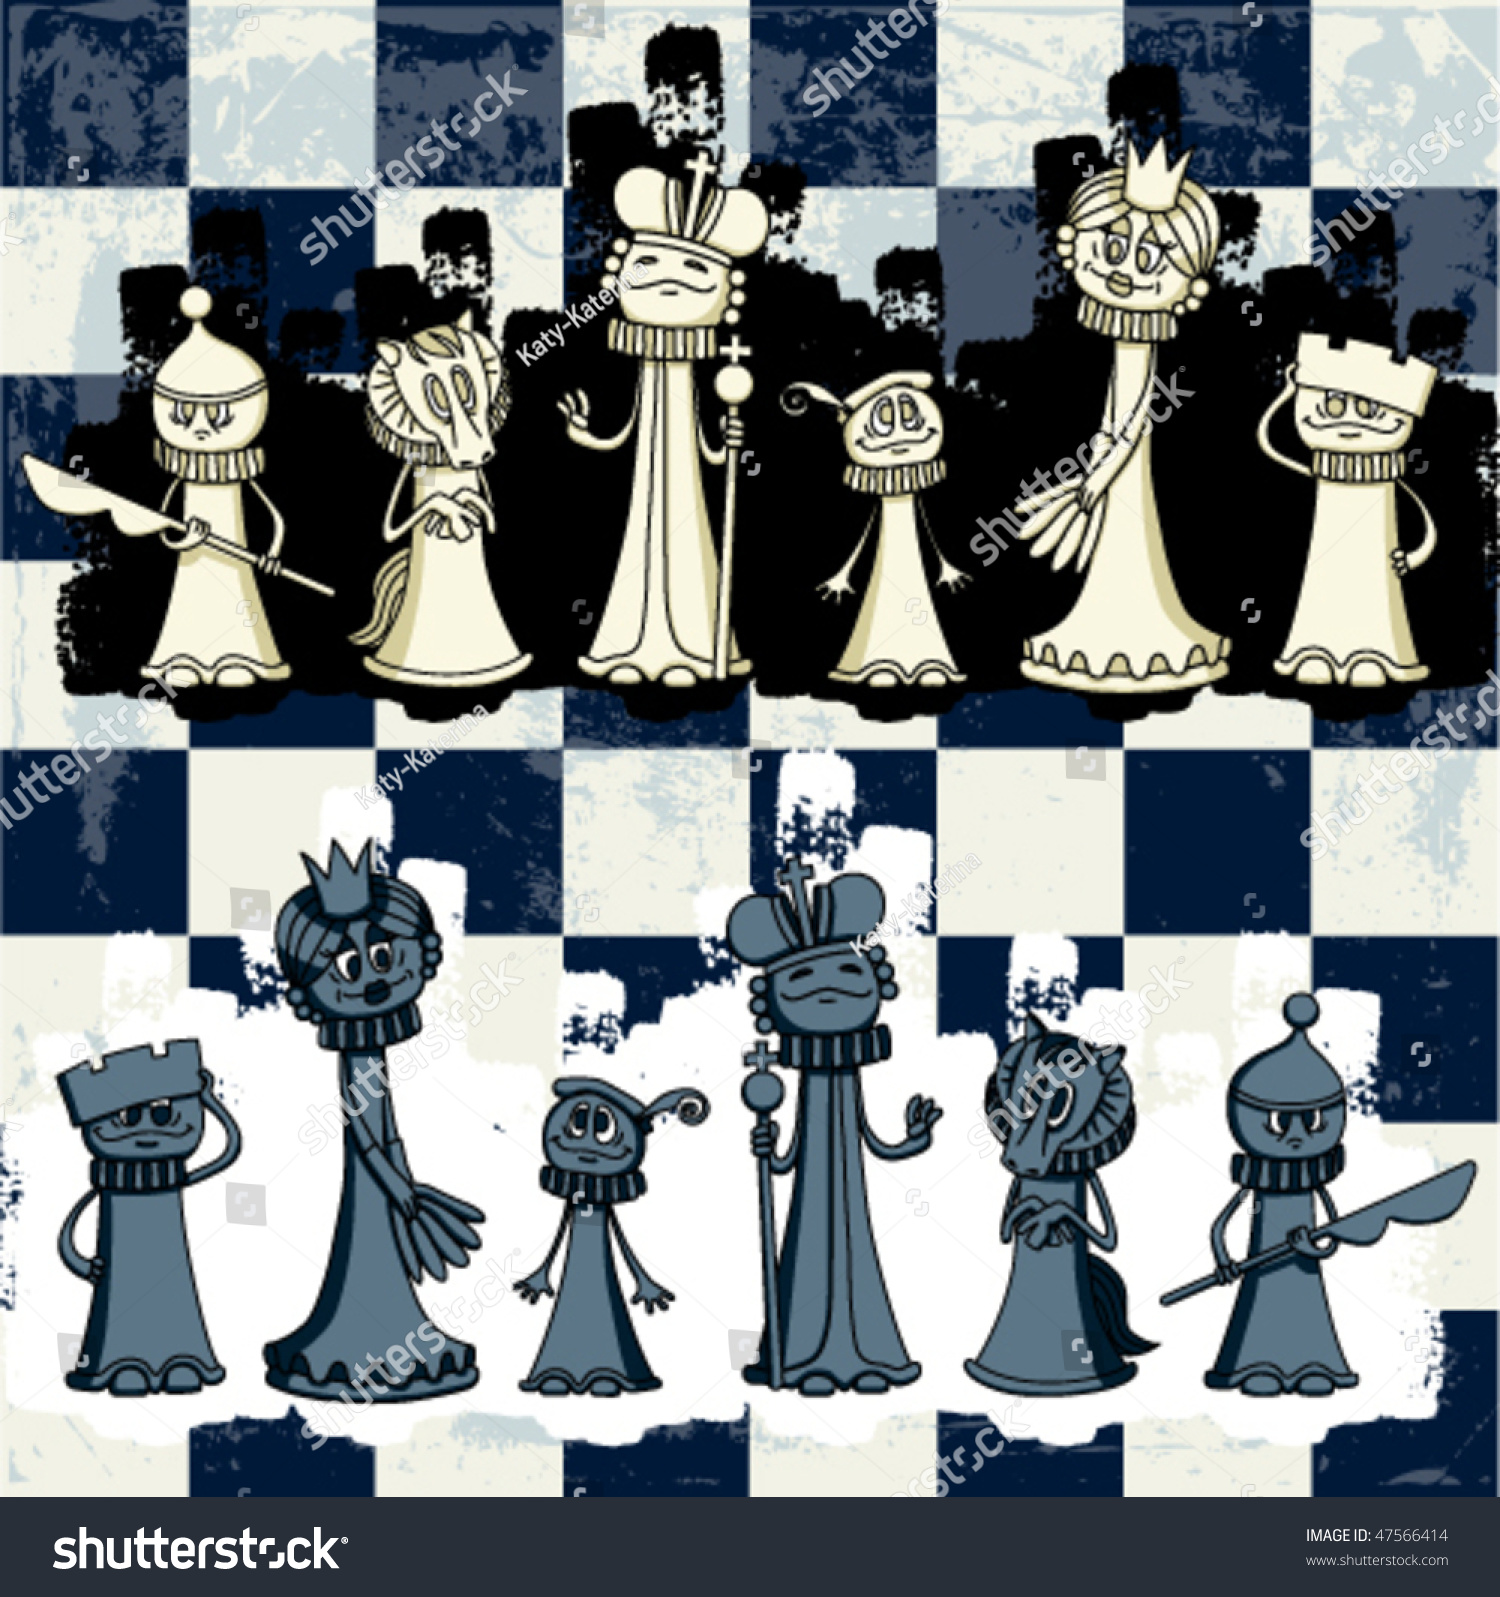 Ослиный шаг: игра в шахматы с Алисой в зазеркалье